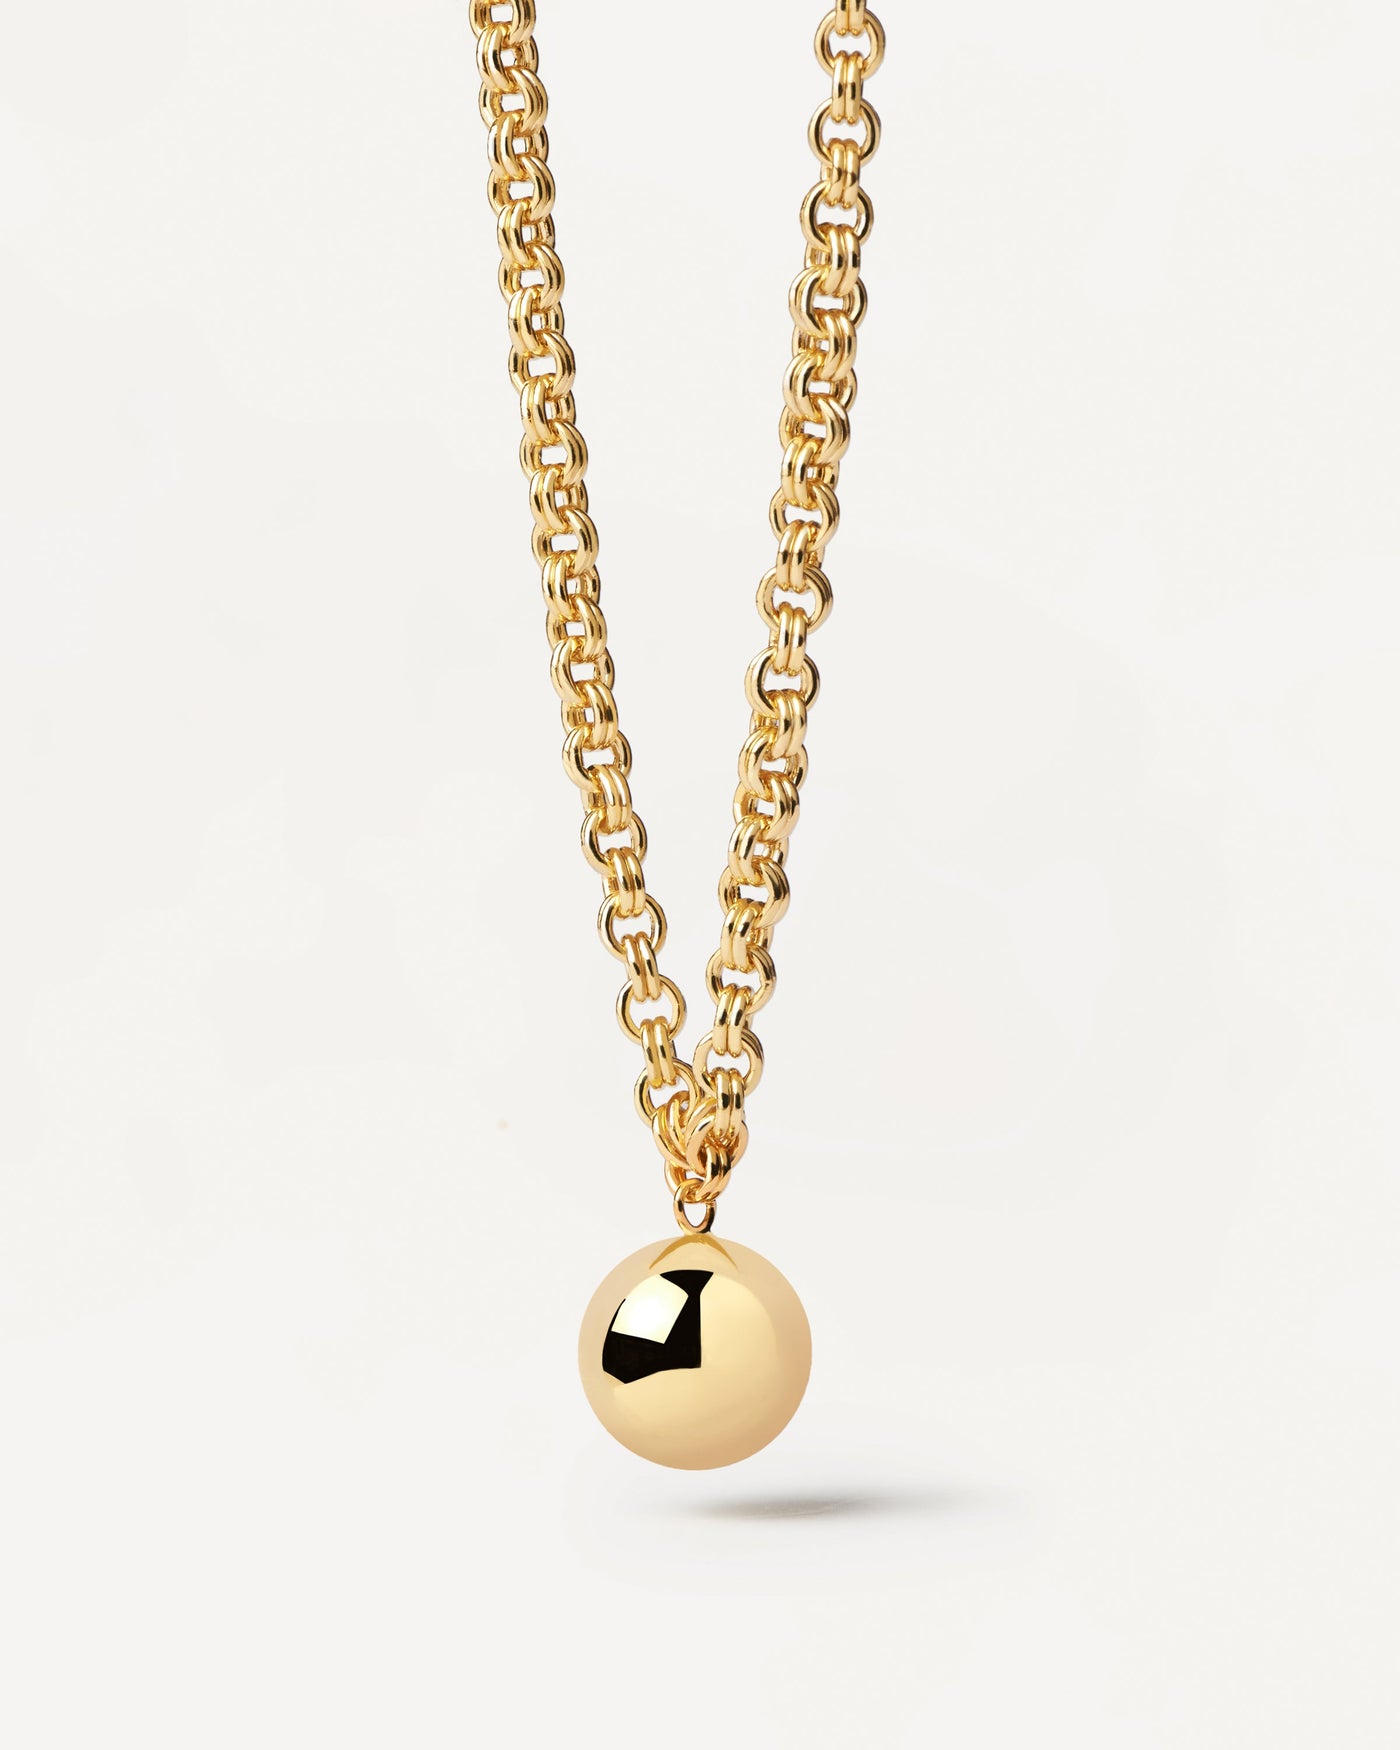 Super Future Halskette. Goldverzerrte Silberkette Halskette mit einem hängenden Ballanhänger. Erhalten Sie die neuesten Produkte von PDPAOLA. Geben Sie Ihre Bestellung sicher auf und erhalten Sie diesen Bestseller.